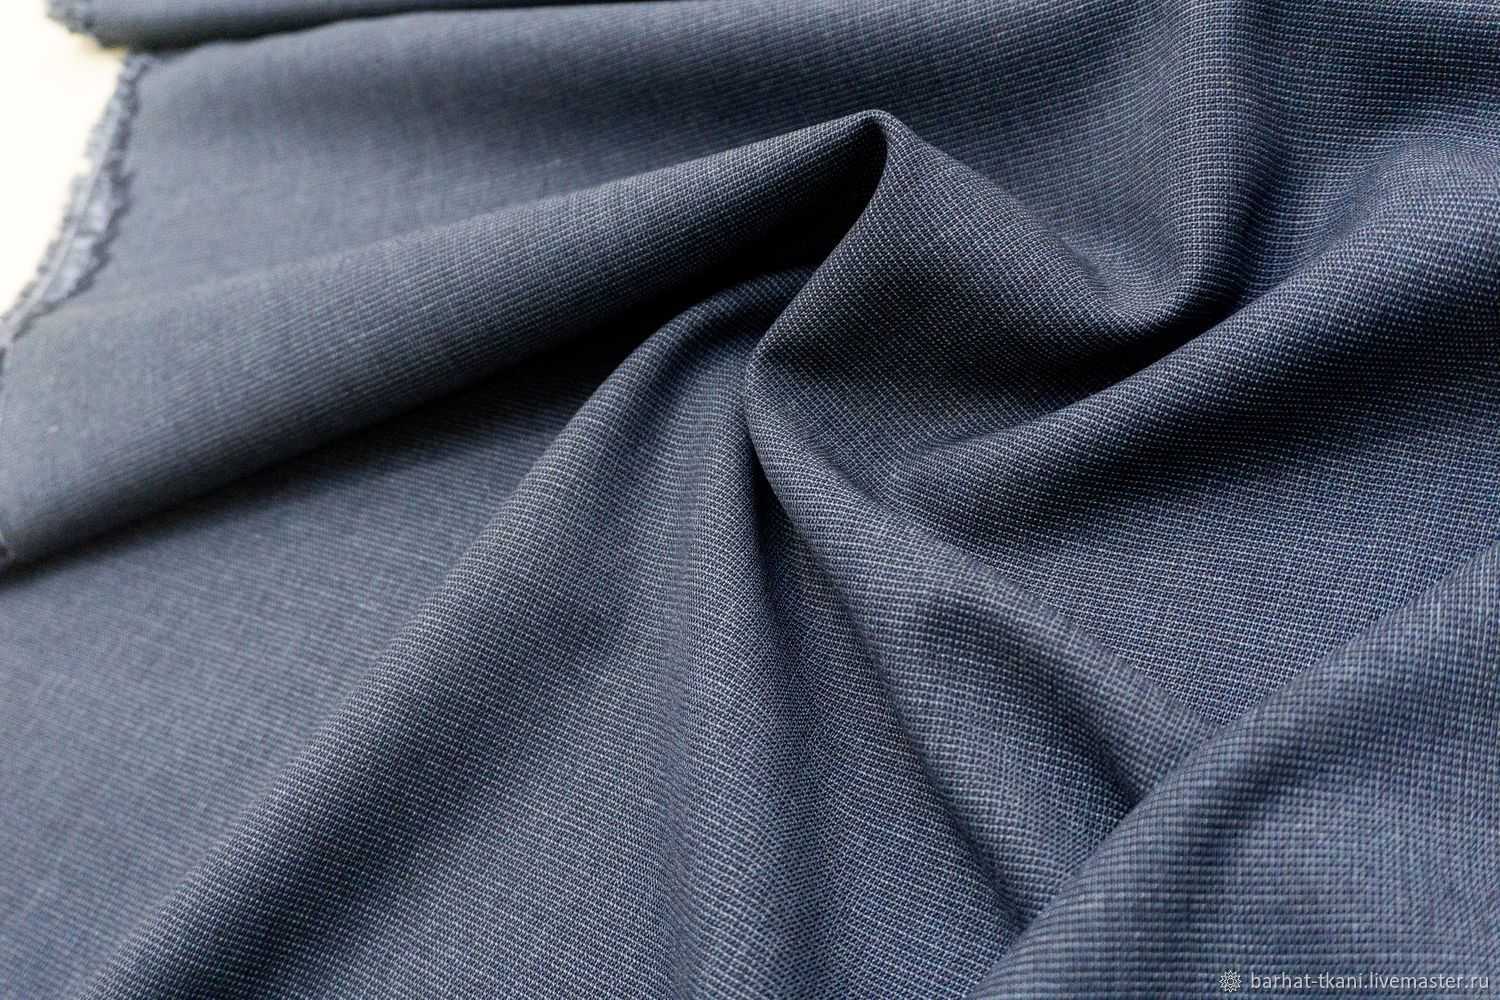 Сукно — прочная, плотная шерстяная или полушерстяная ткань